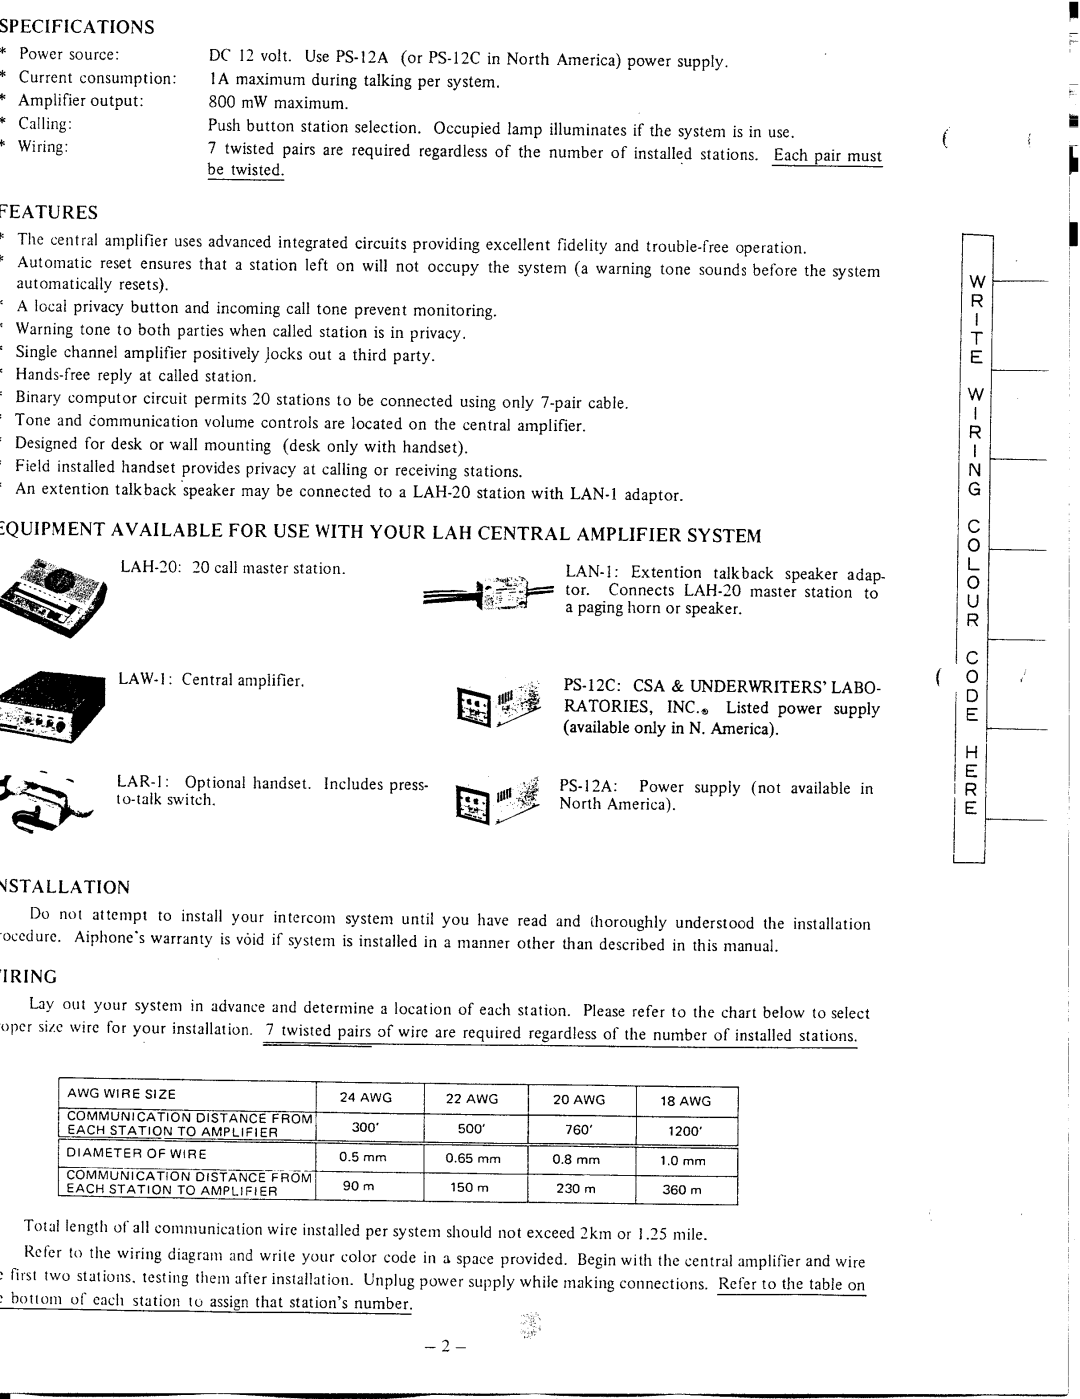 Aiphone LAH-20, LAW-1 manual 